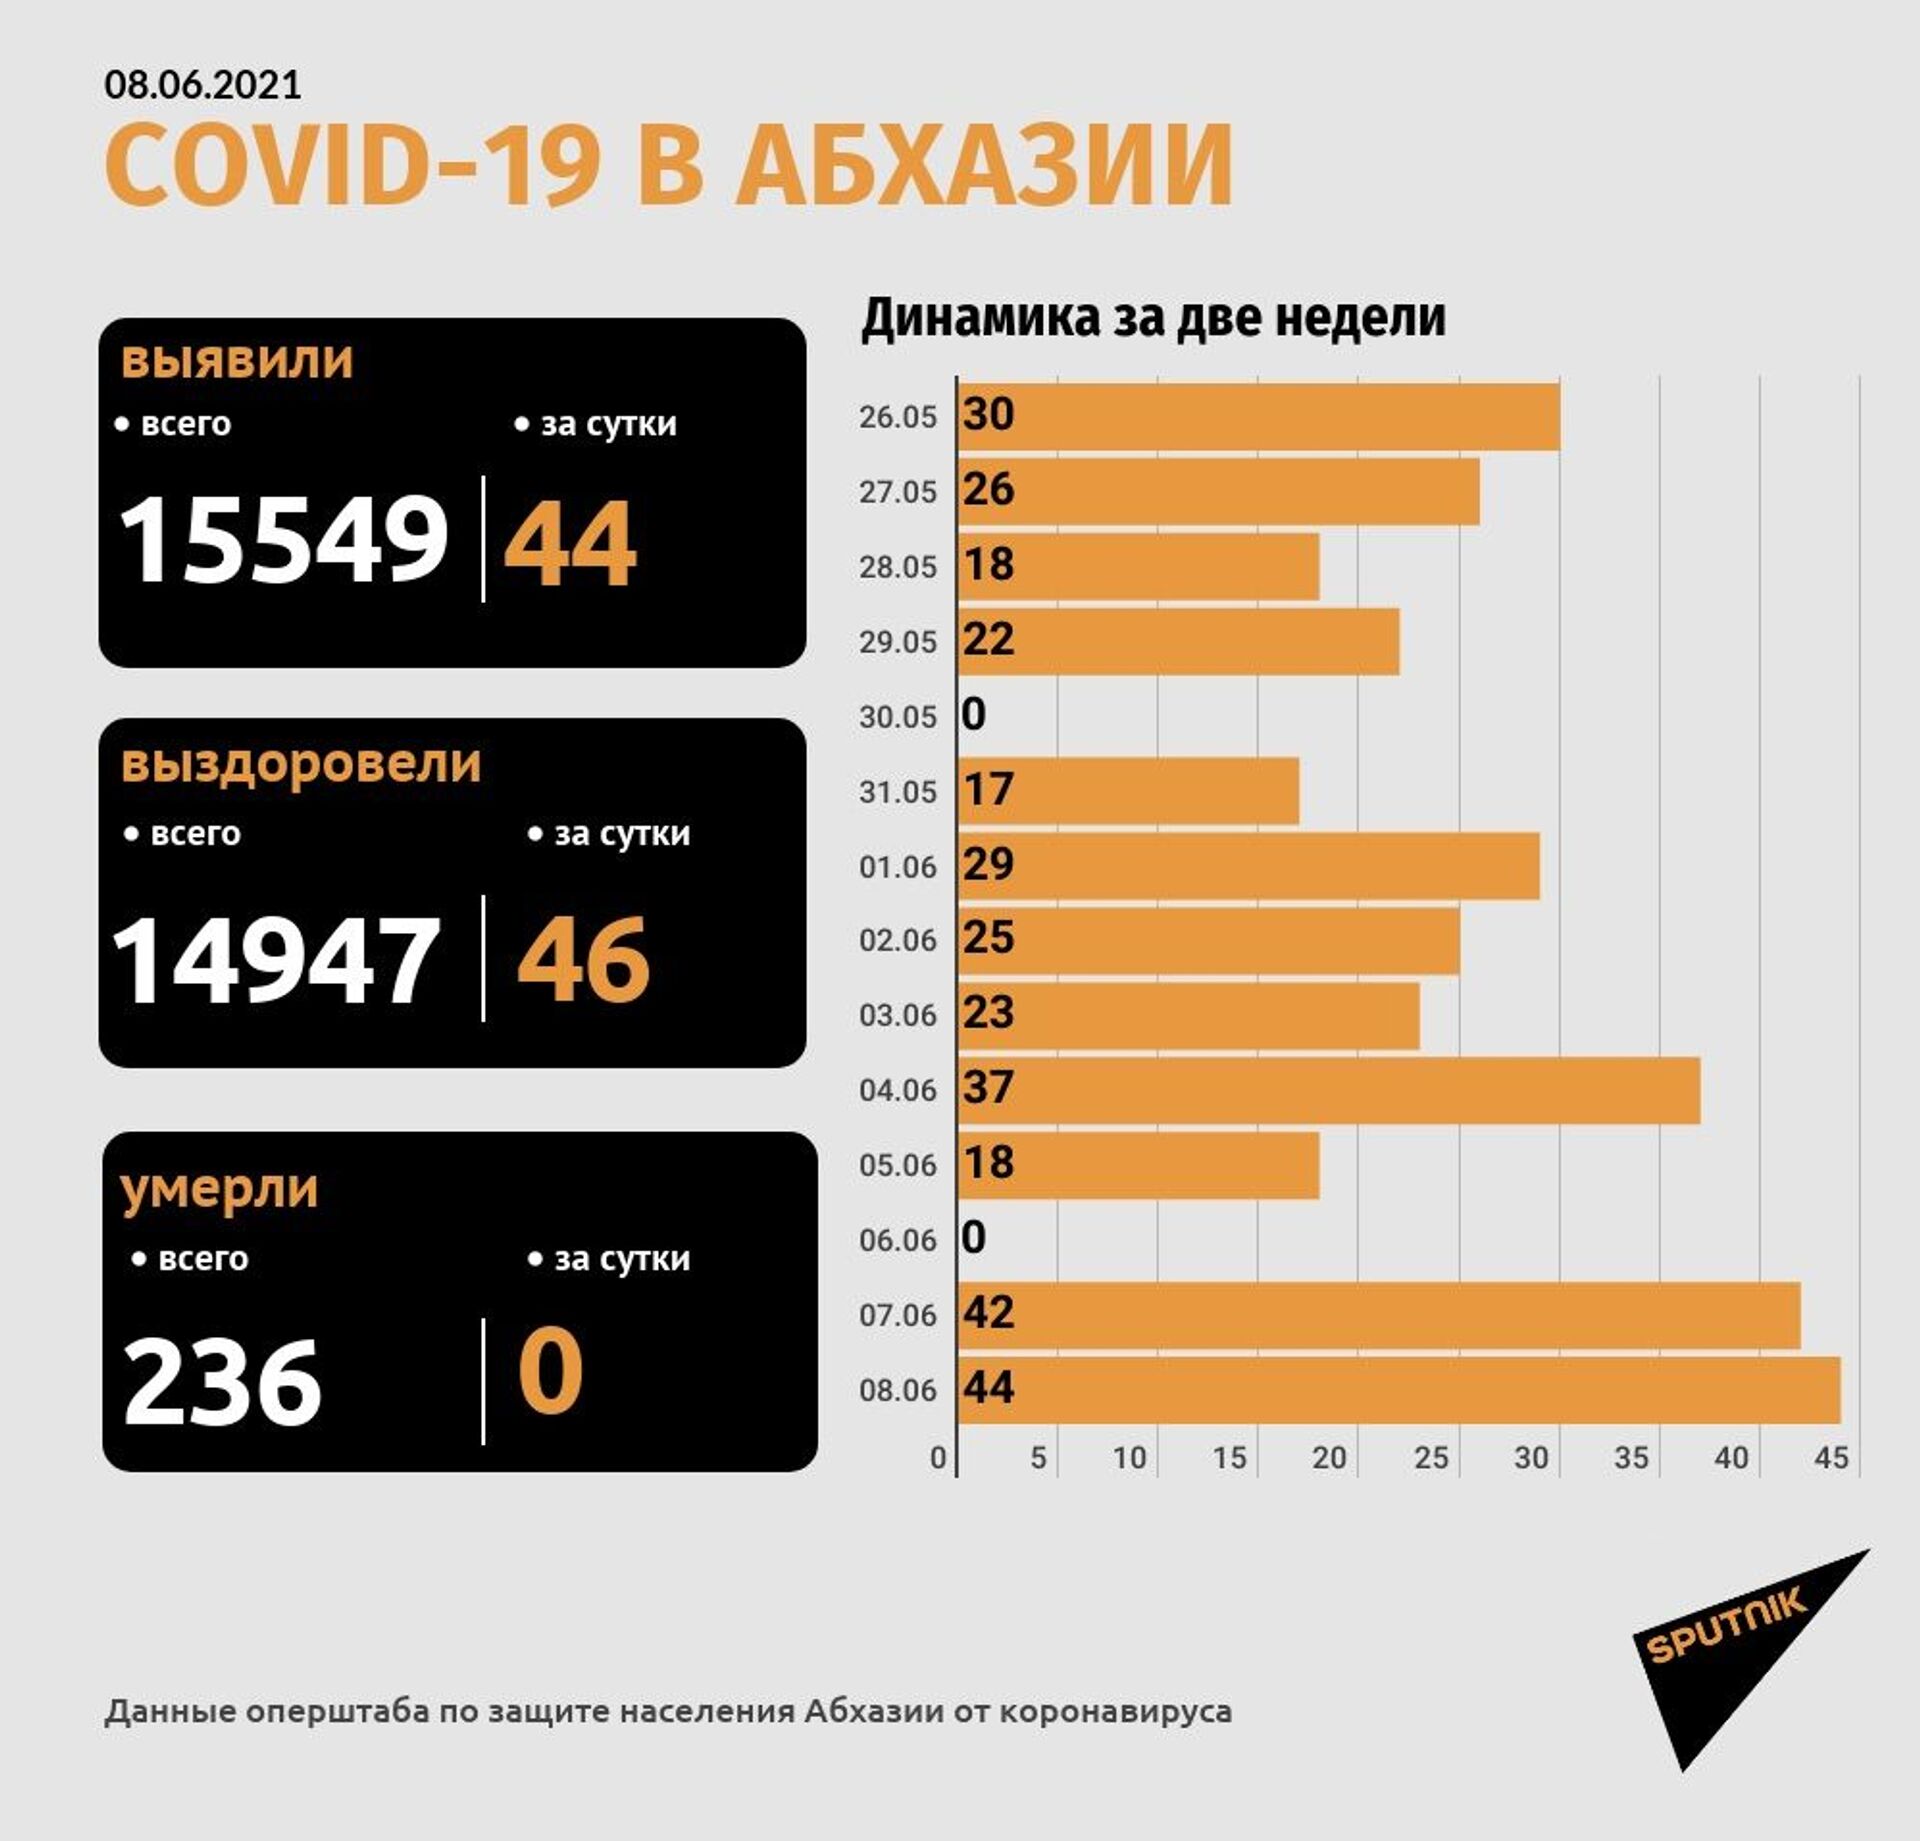 Диагноз коронавирус подтвержден еще у 44 человек в Абхазии - Sputnik Абхазия, 1920, 08.06.2021